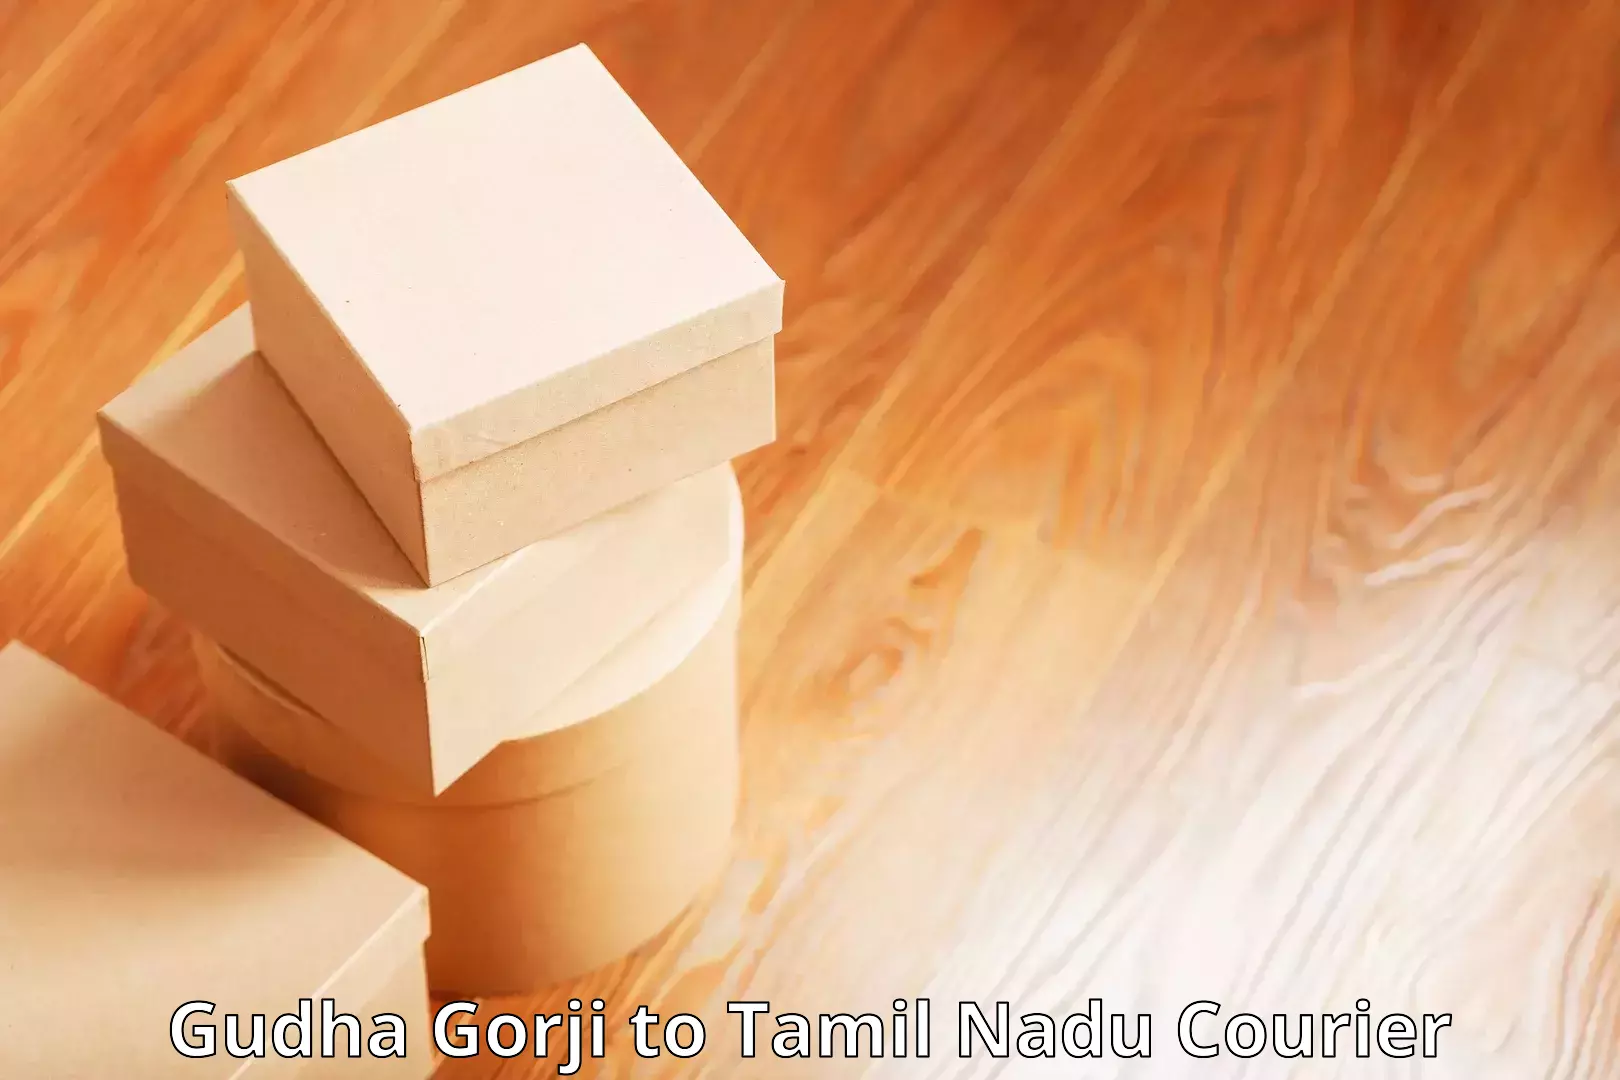 Comprehensive logistics Gudha Gorji to Tiruturaipundi